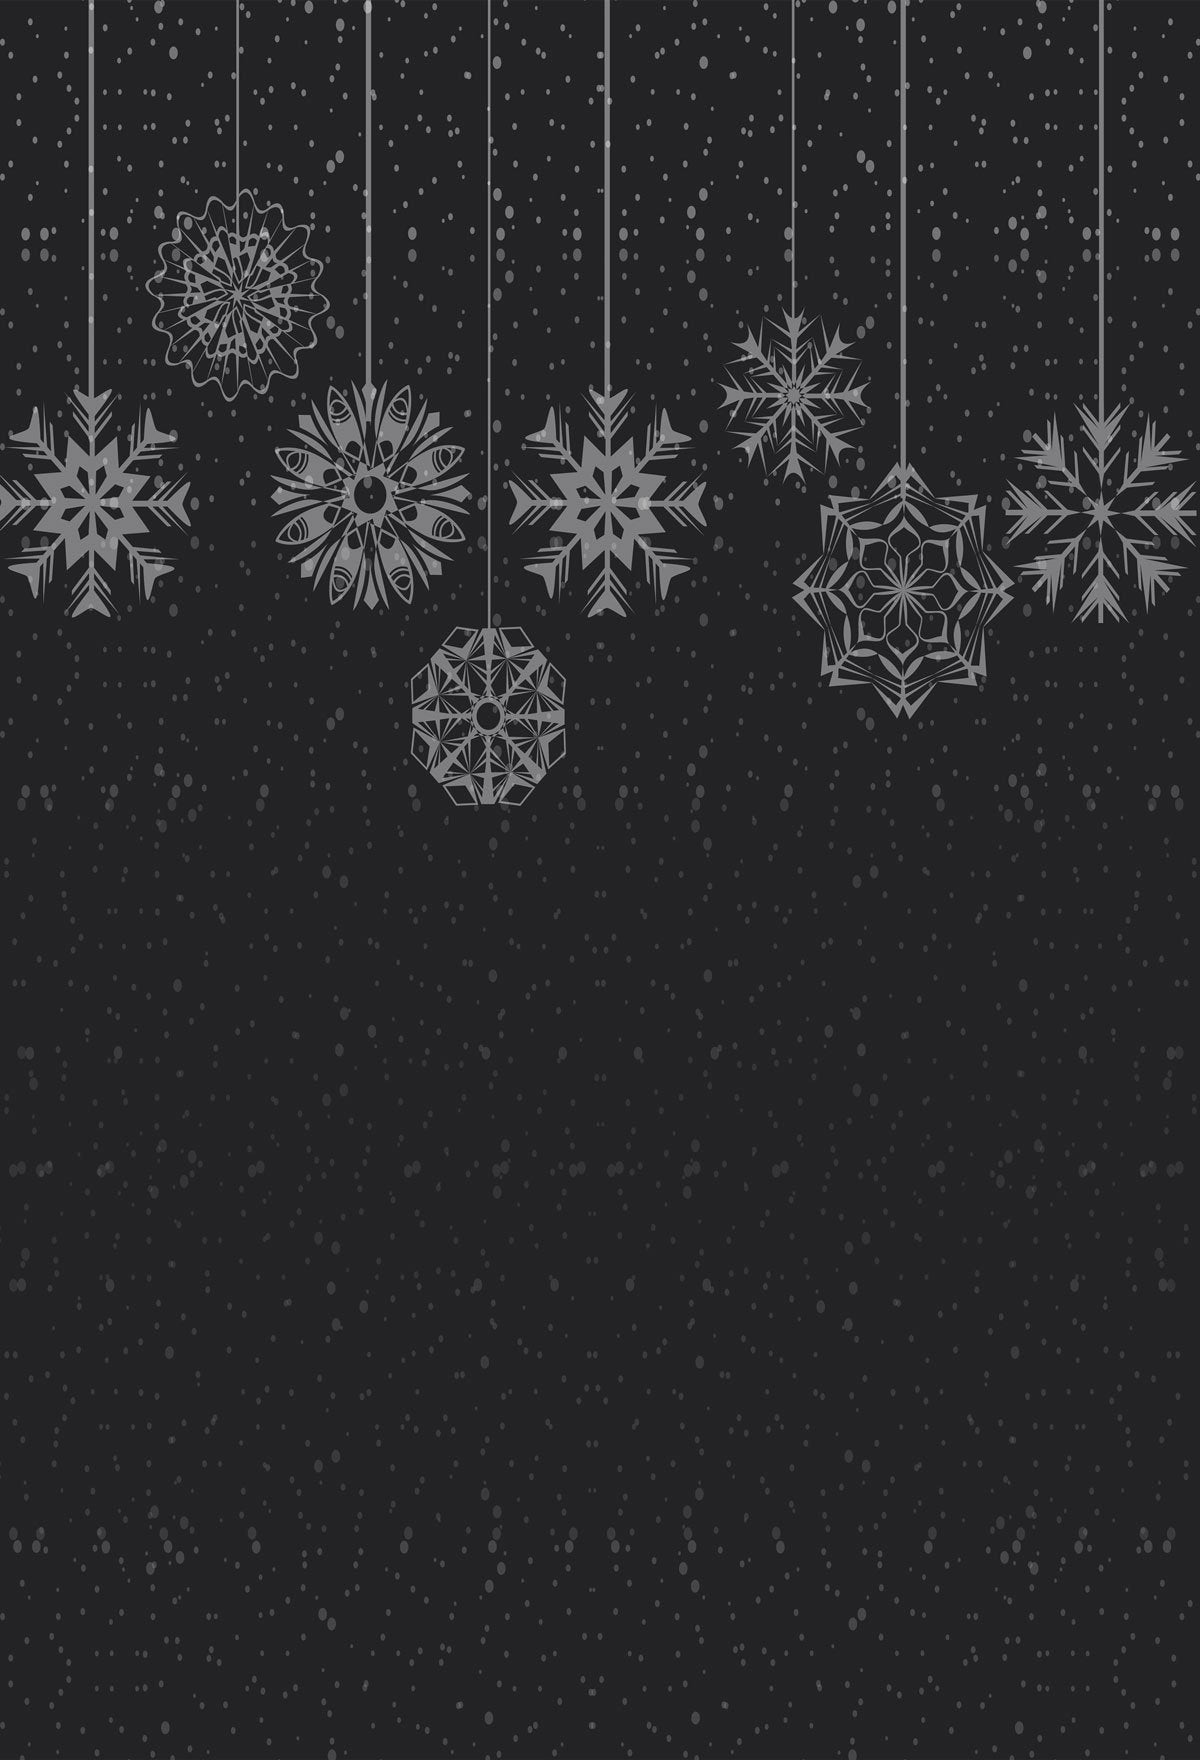 Kate-schwarzer Hintergrund-Schneeflocke-Hintergrund Entworfen von Jerry_Sina